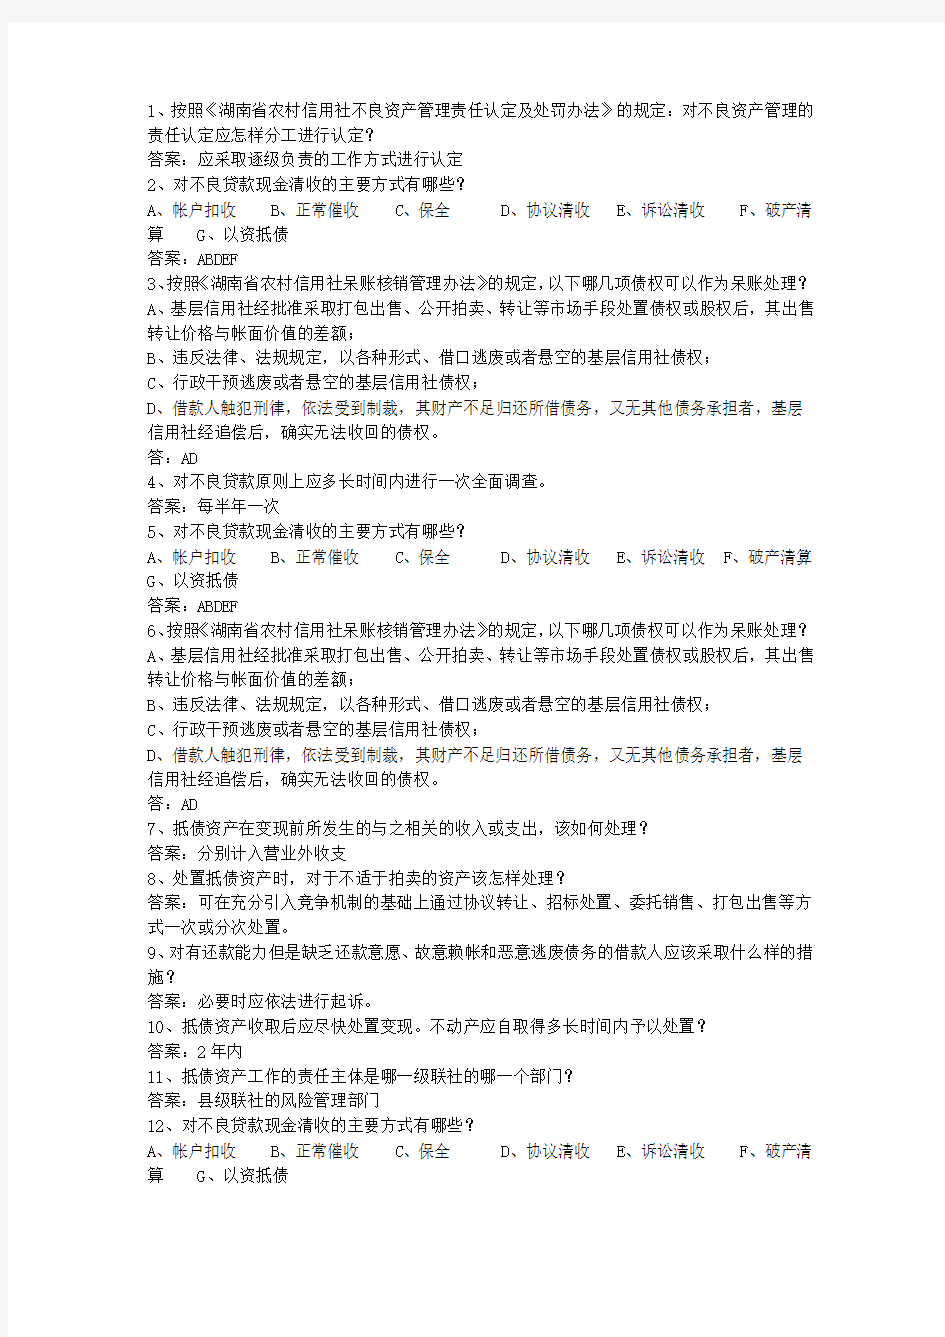 2014海南省农村信用社考试历年考试答题技巧